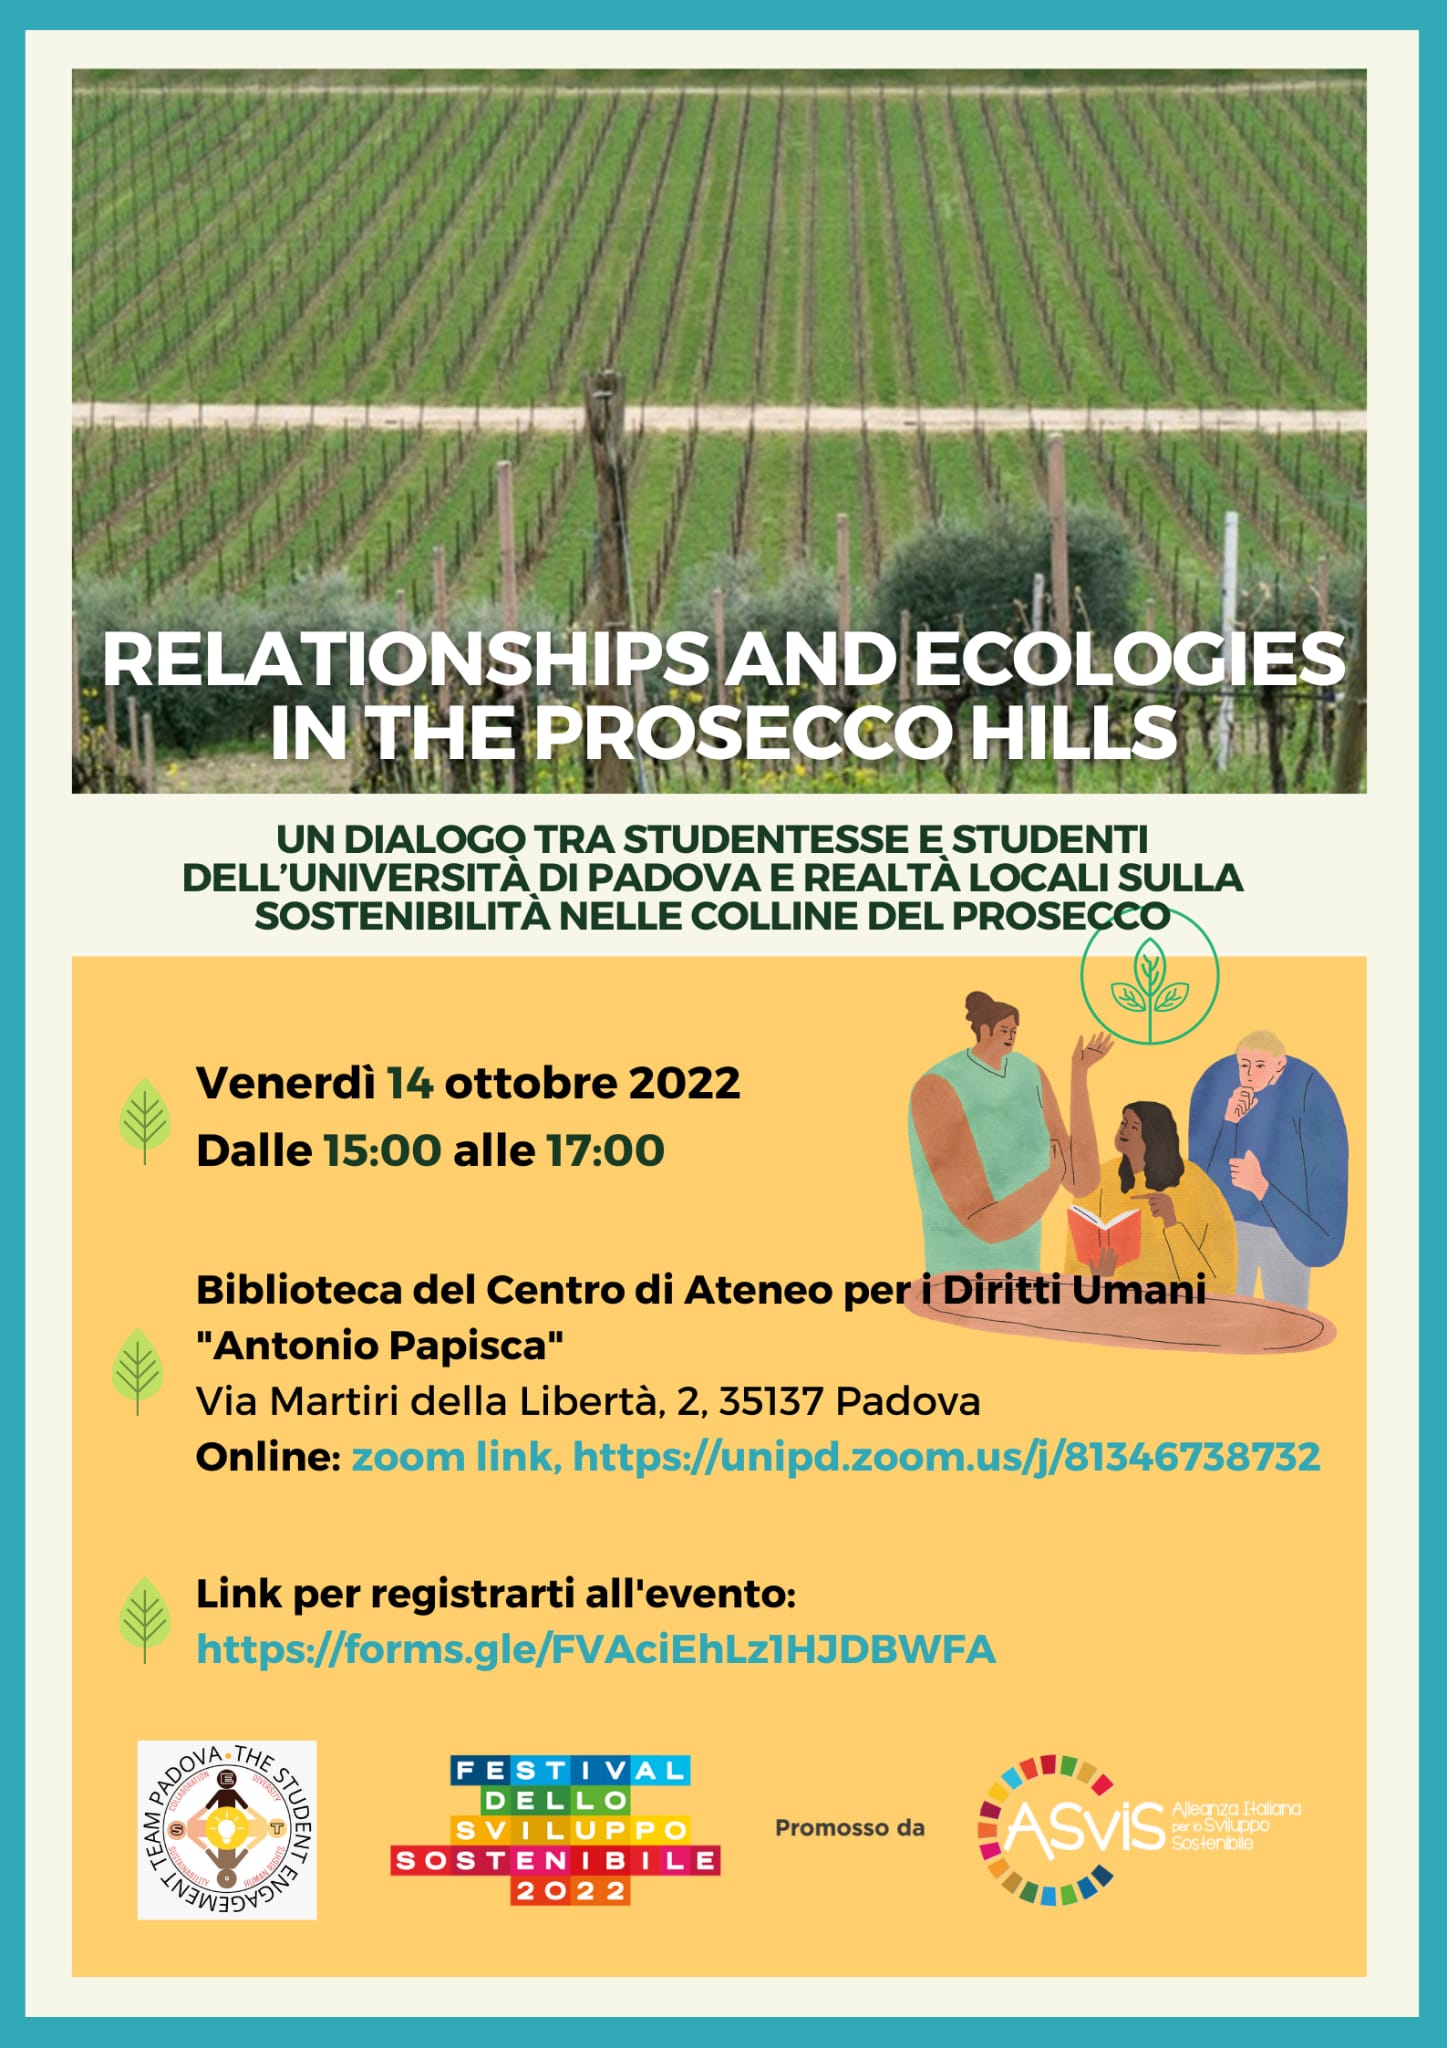 Relationships and Ecologies in the Prosecco Hills. Un dialogo tra studentesse e studenti dell’Università di Padova e realtà locali sulla sostenibilità nelle colline del Prosecco, 14 ottobre 2022